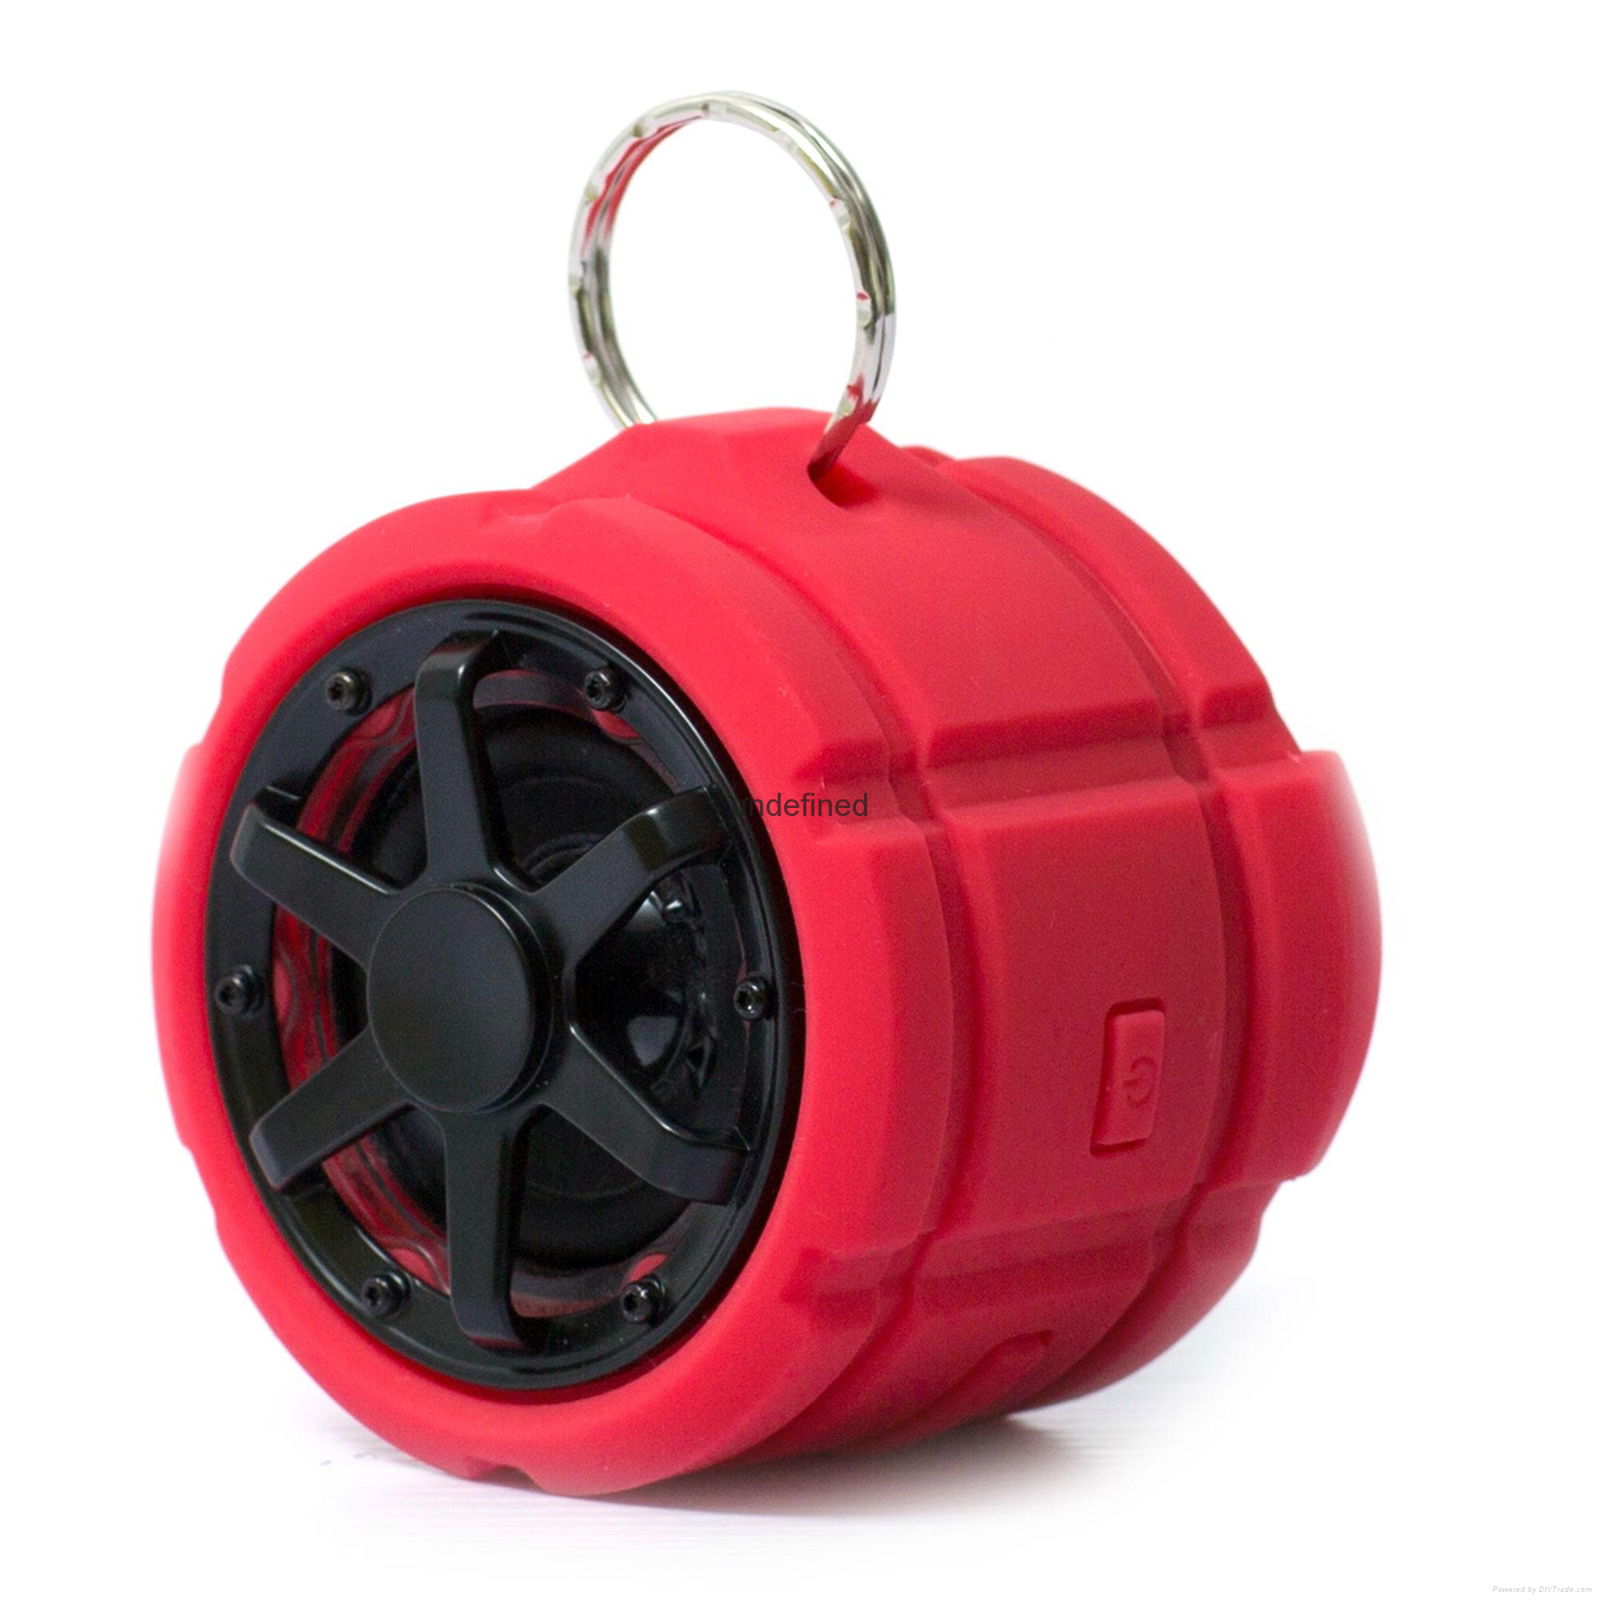 Waterproof speaker 5